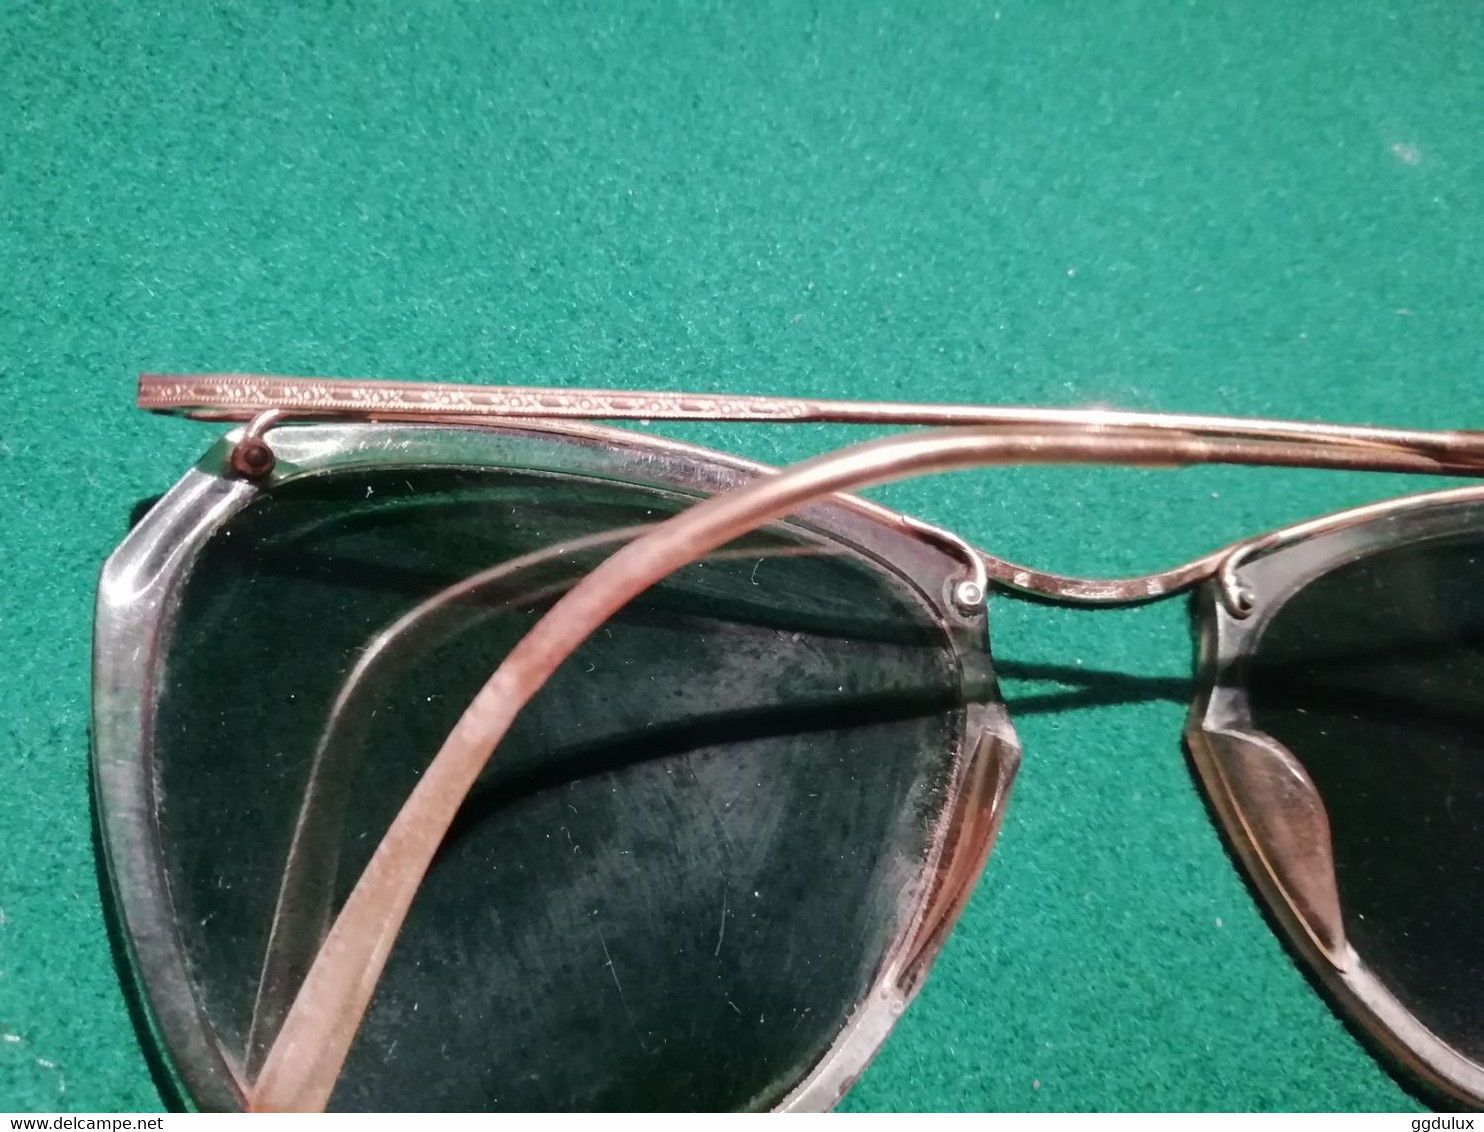 Vintage Paire de lunettes de soleil - Marque Etoile + boite